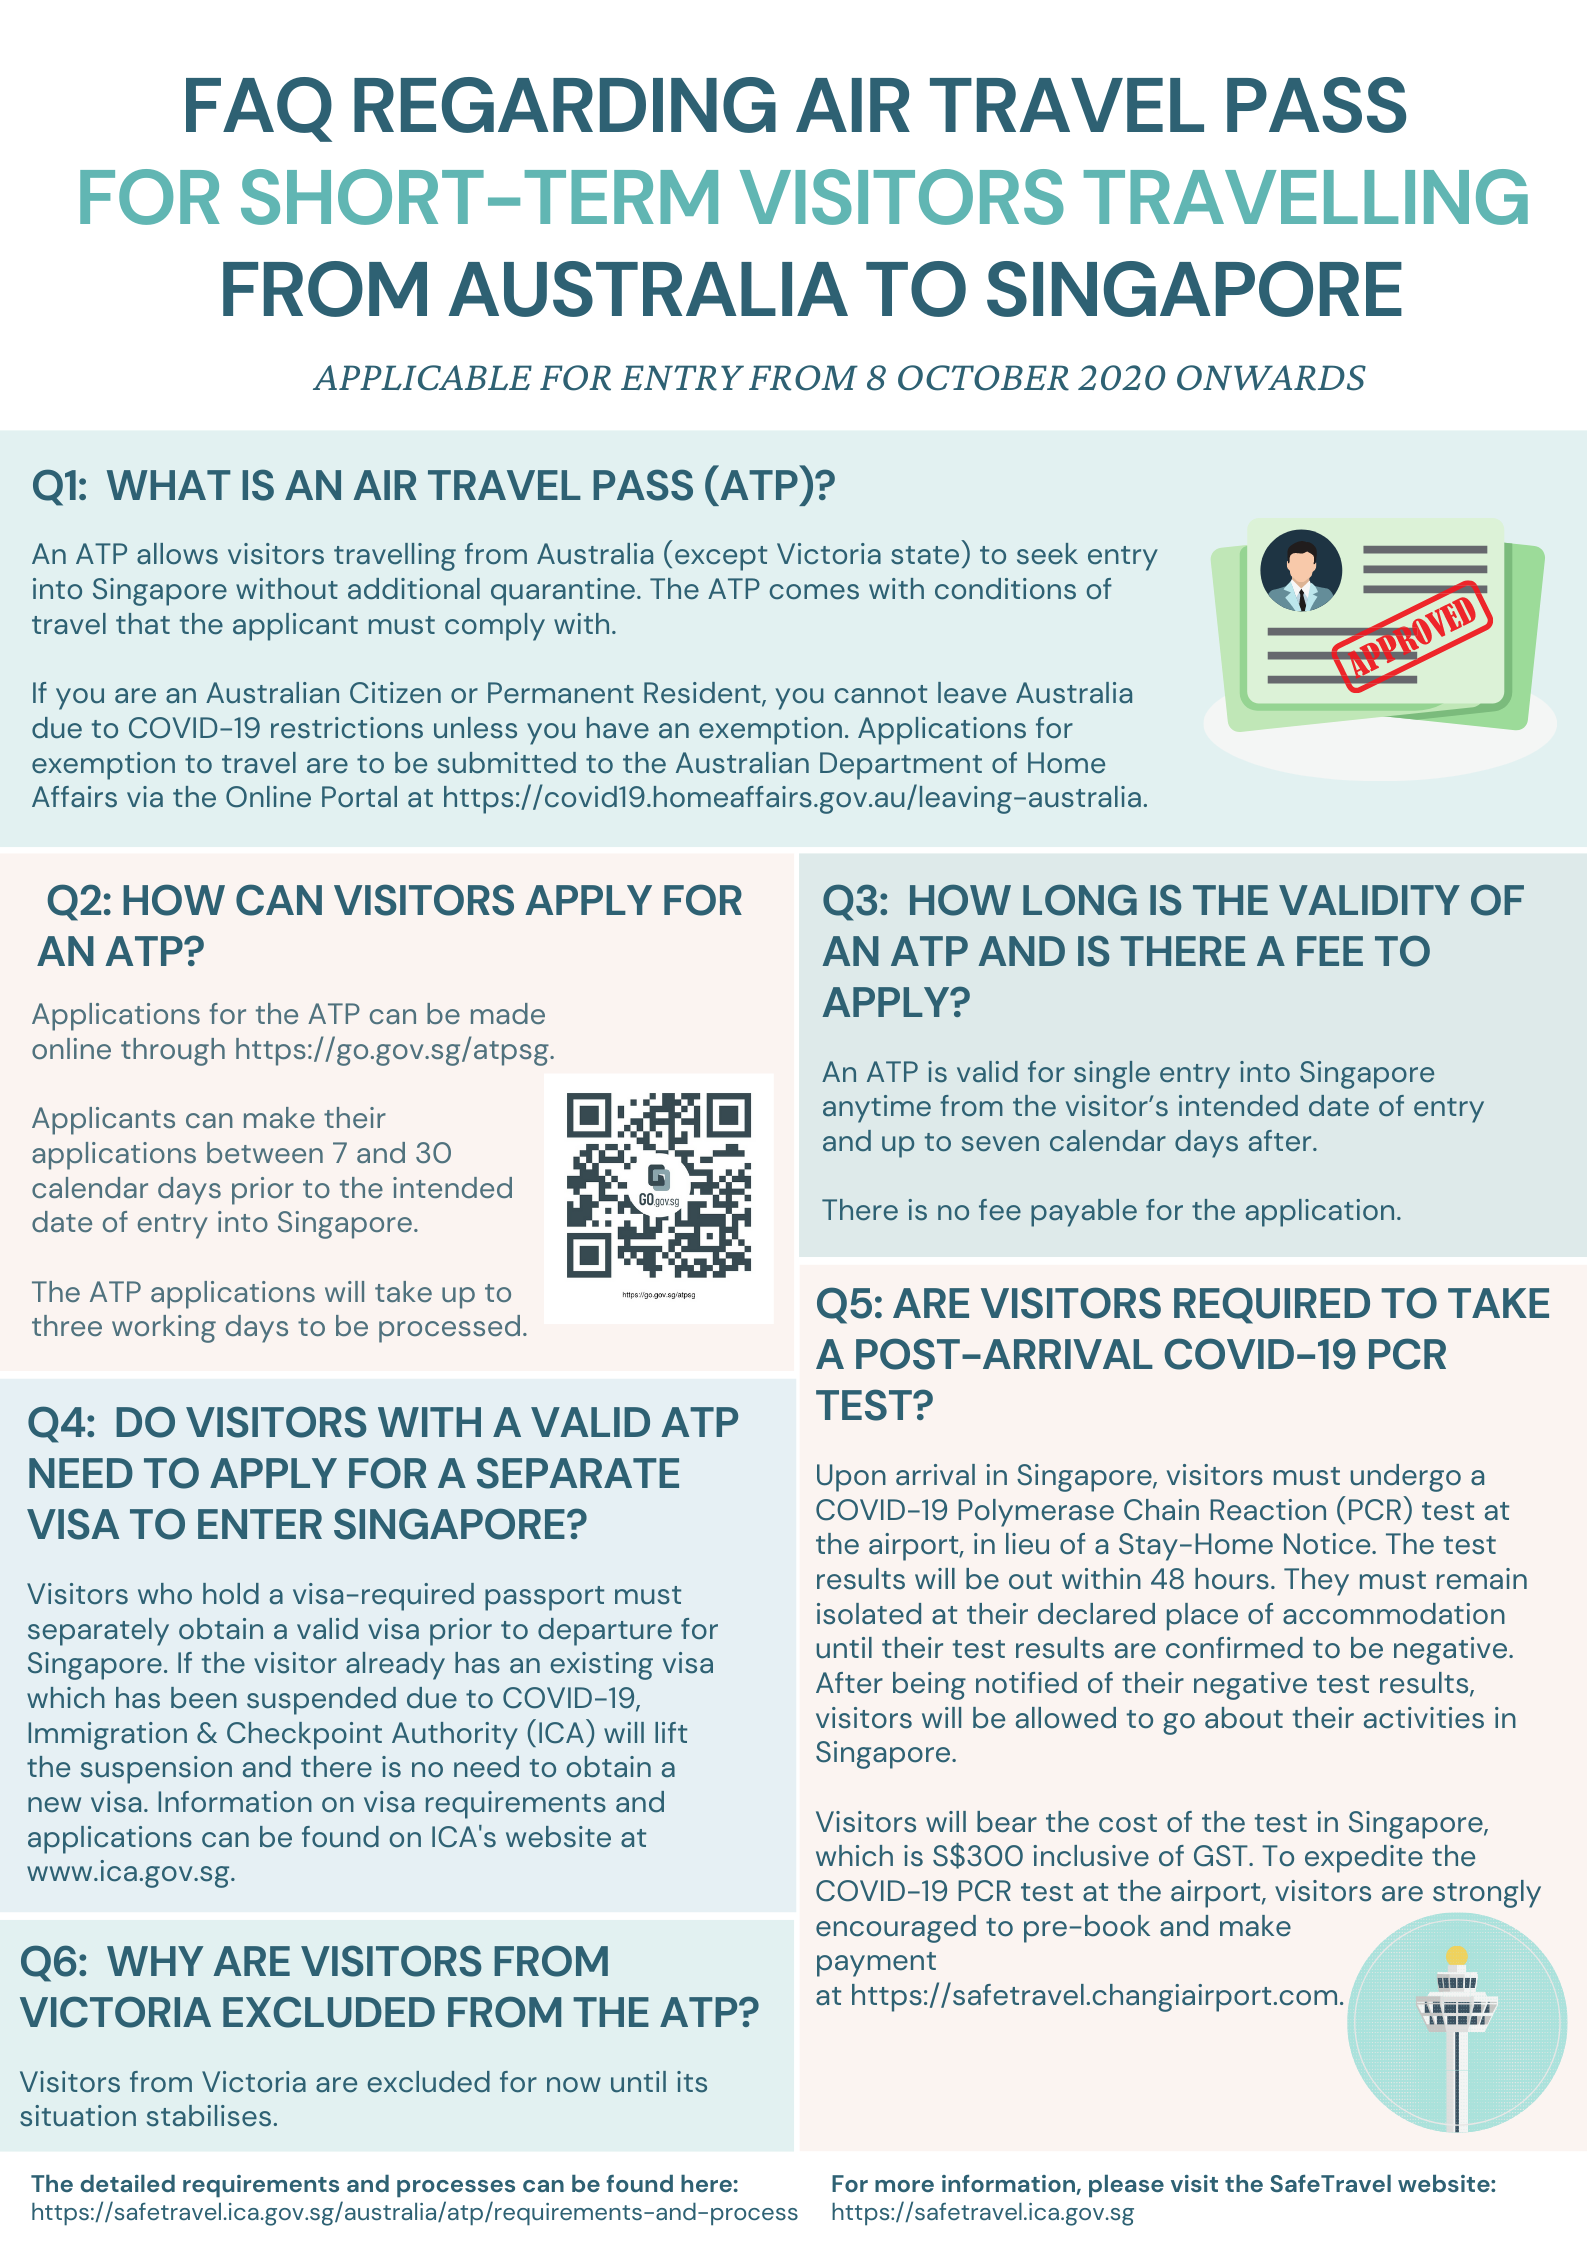 FAQ for Air Travel Pass